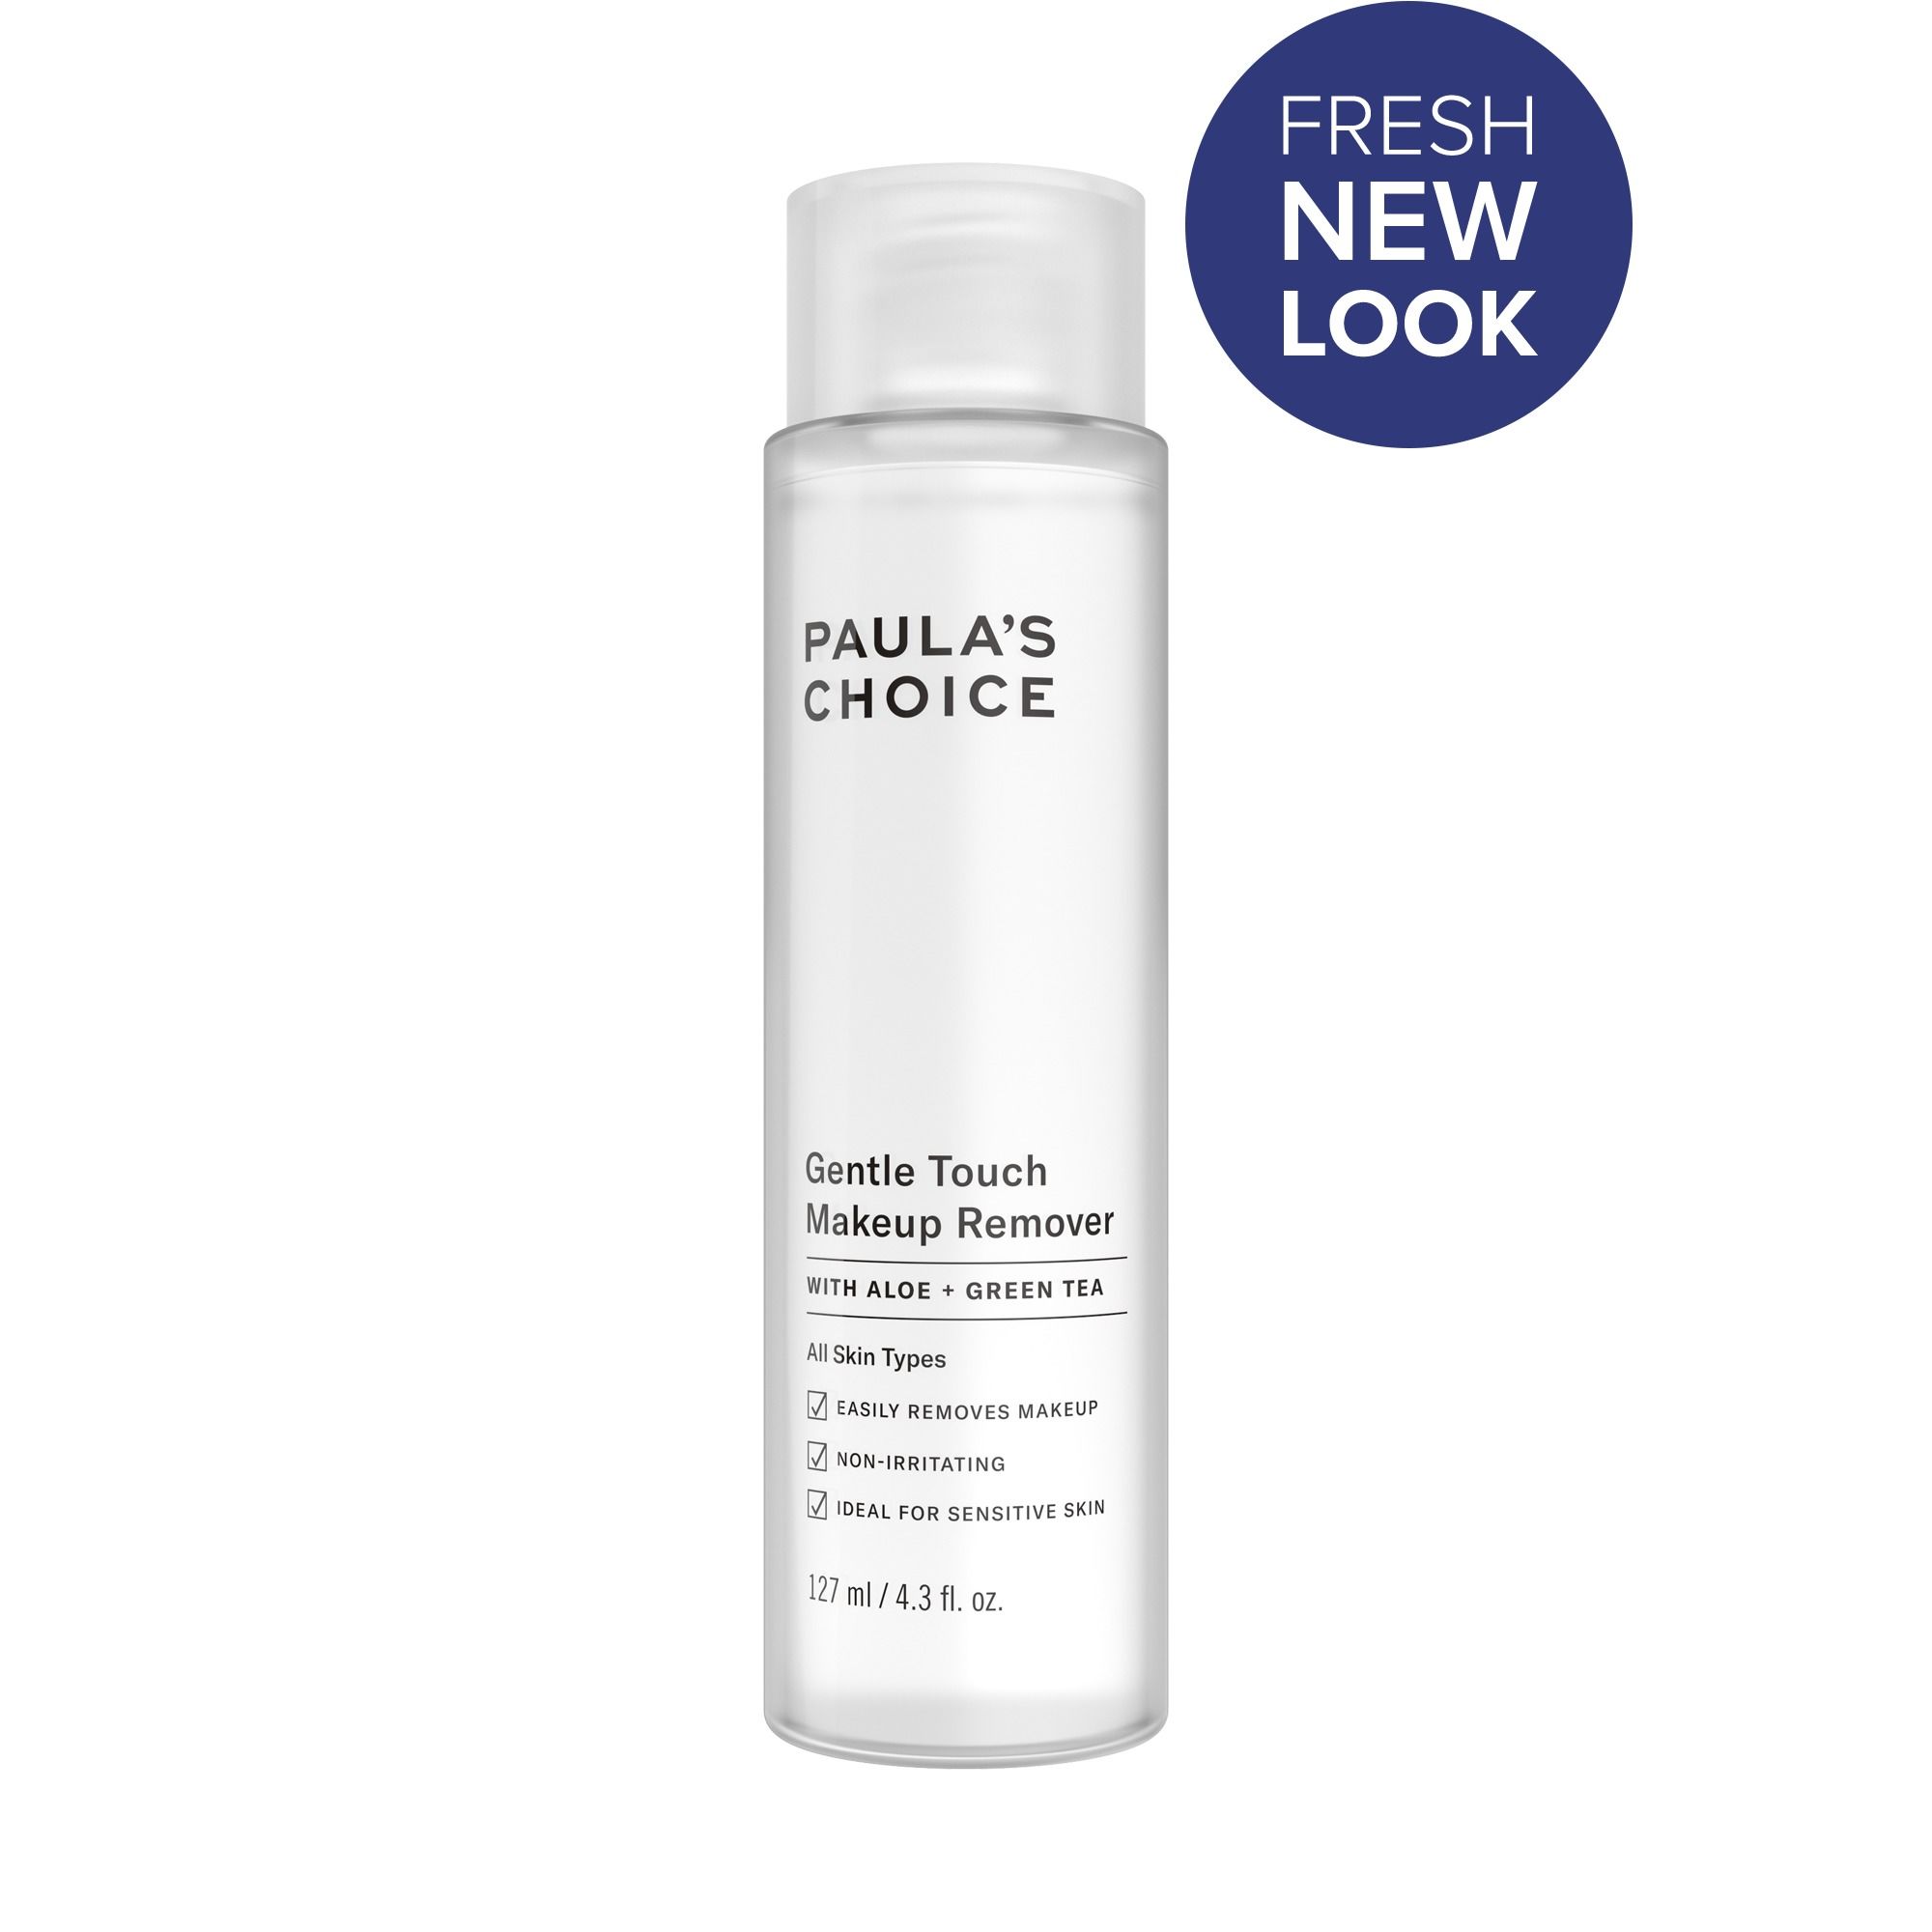 Nước tẩy trang dịu nhẹ Paula’s Choice Gentle Touch Makeup Remover